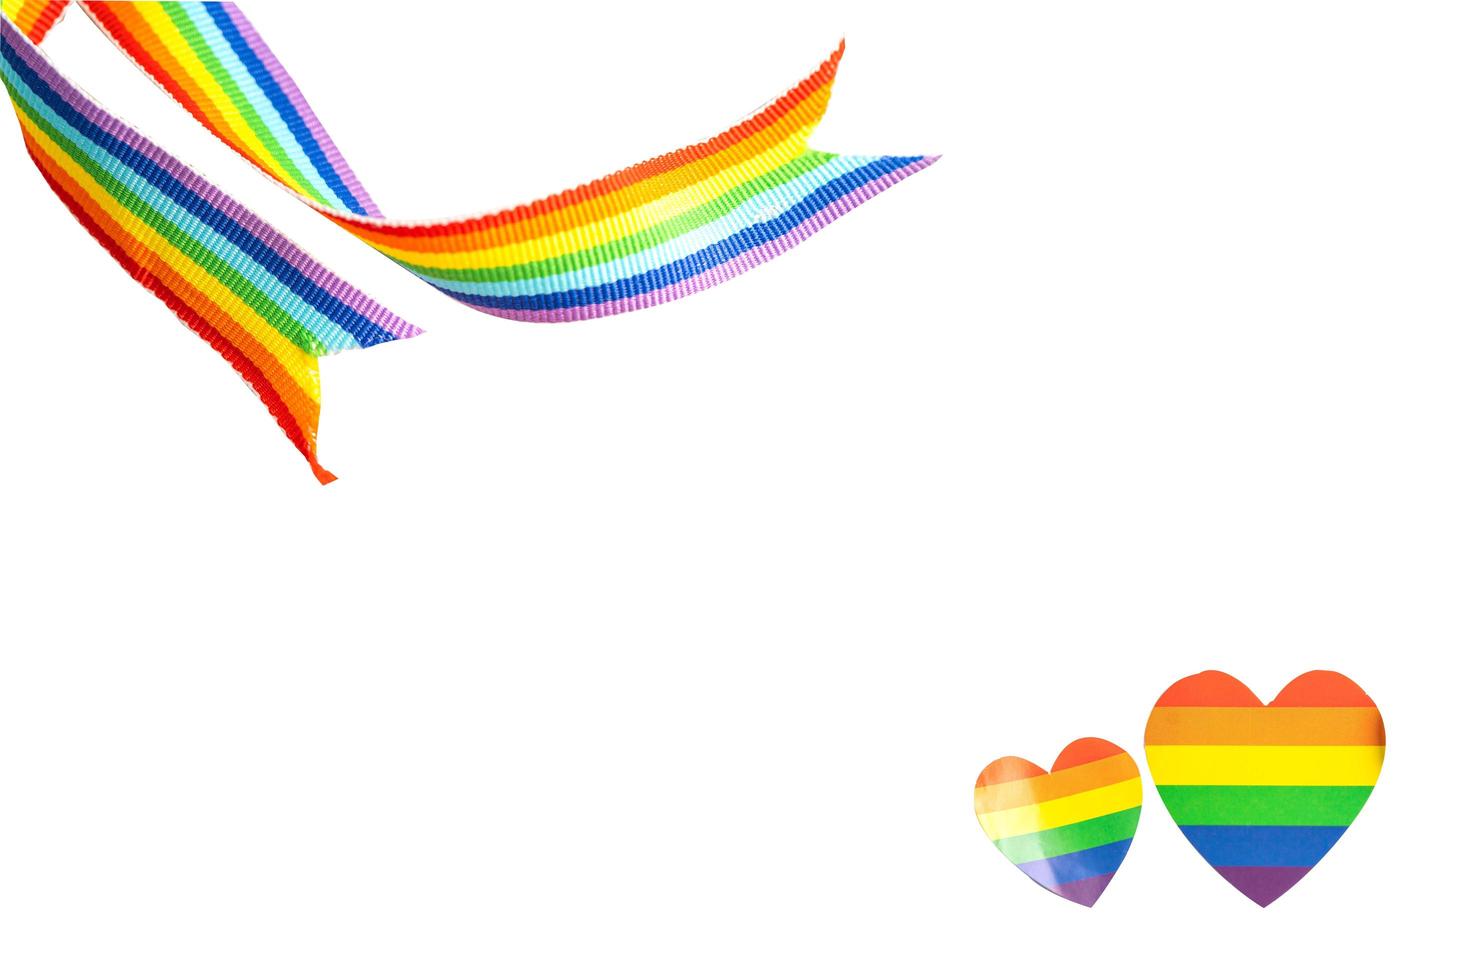 Bandera de colores del arco iris lgbt, corazón y cinta con espacio para copiar, símbolo de lesbianas, gays, bisexuales, transgénero, derechos humanos, tolerancia y paz. foto